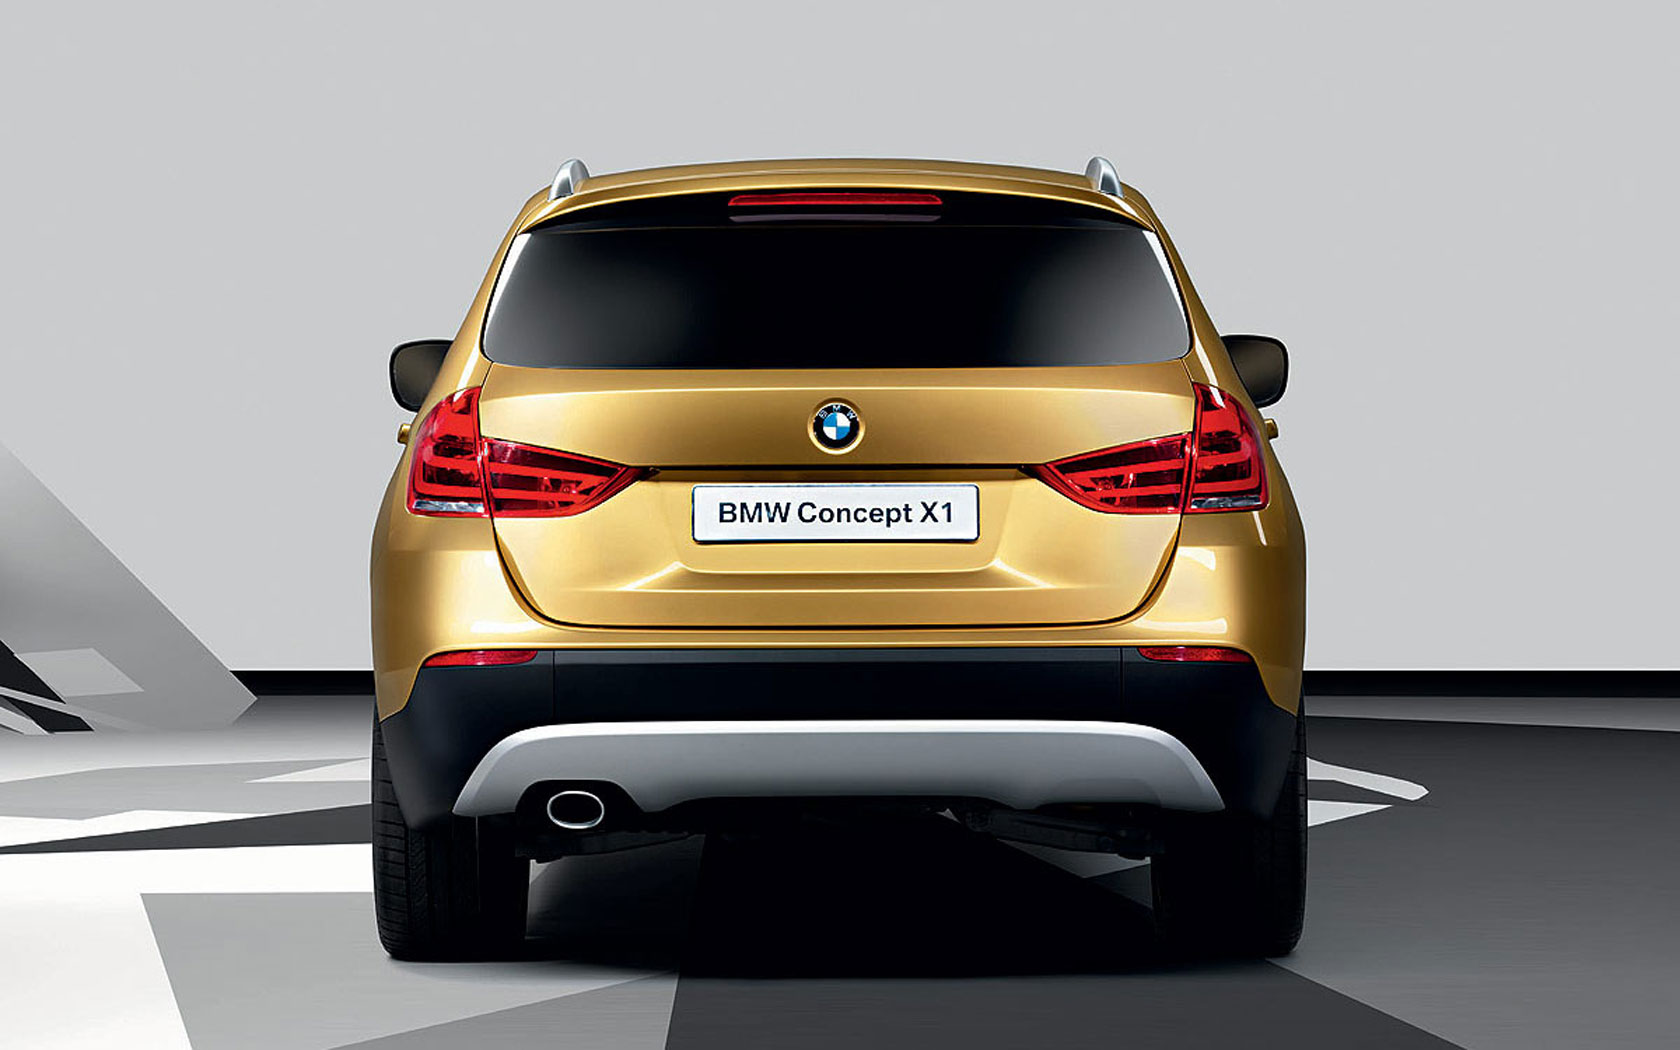  BMW X1 Concept 